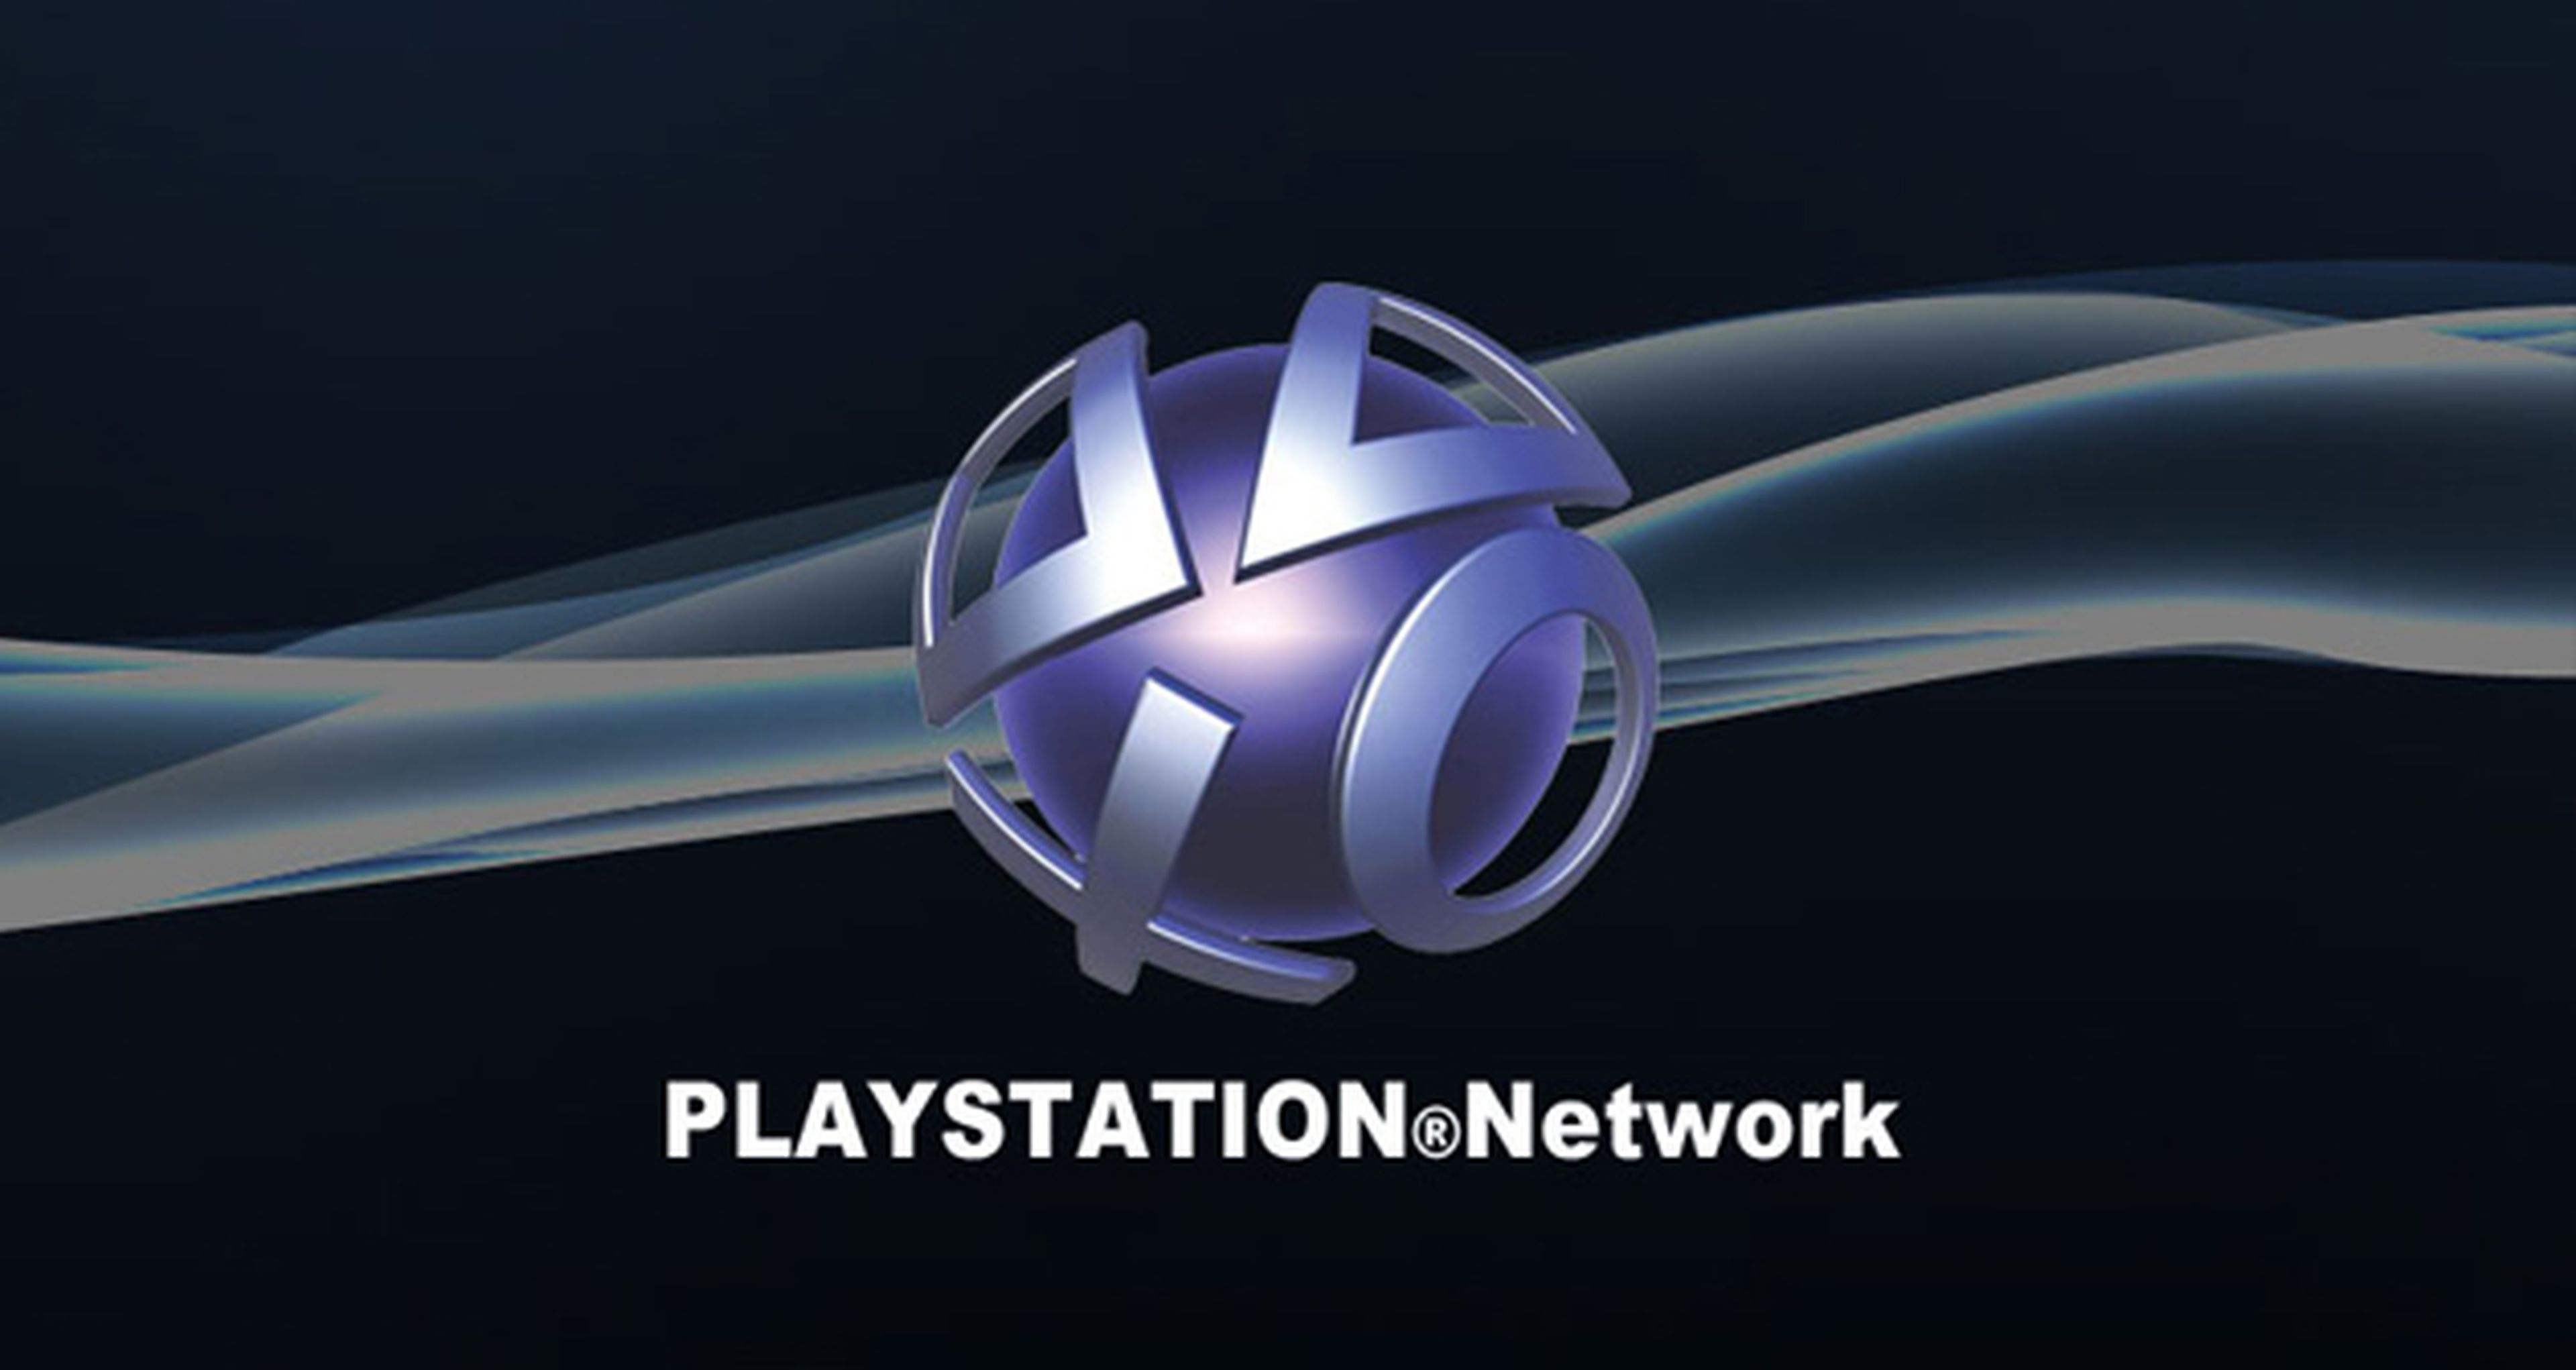 Sony agradece las sugerencias para mejorar PlayStation Network